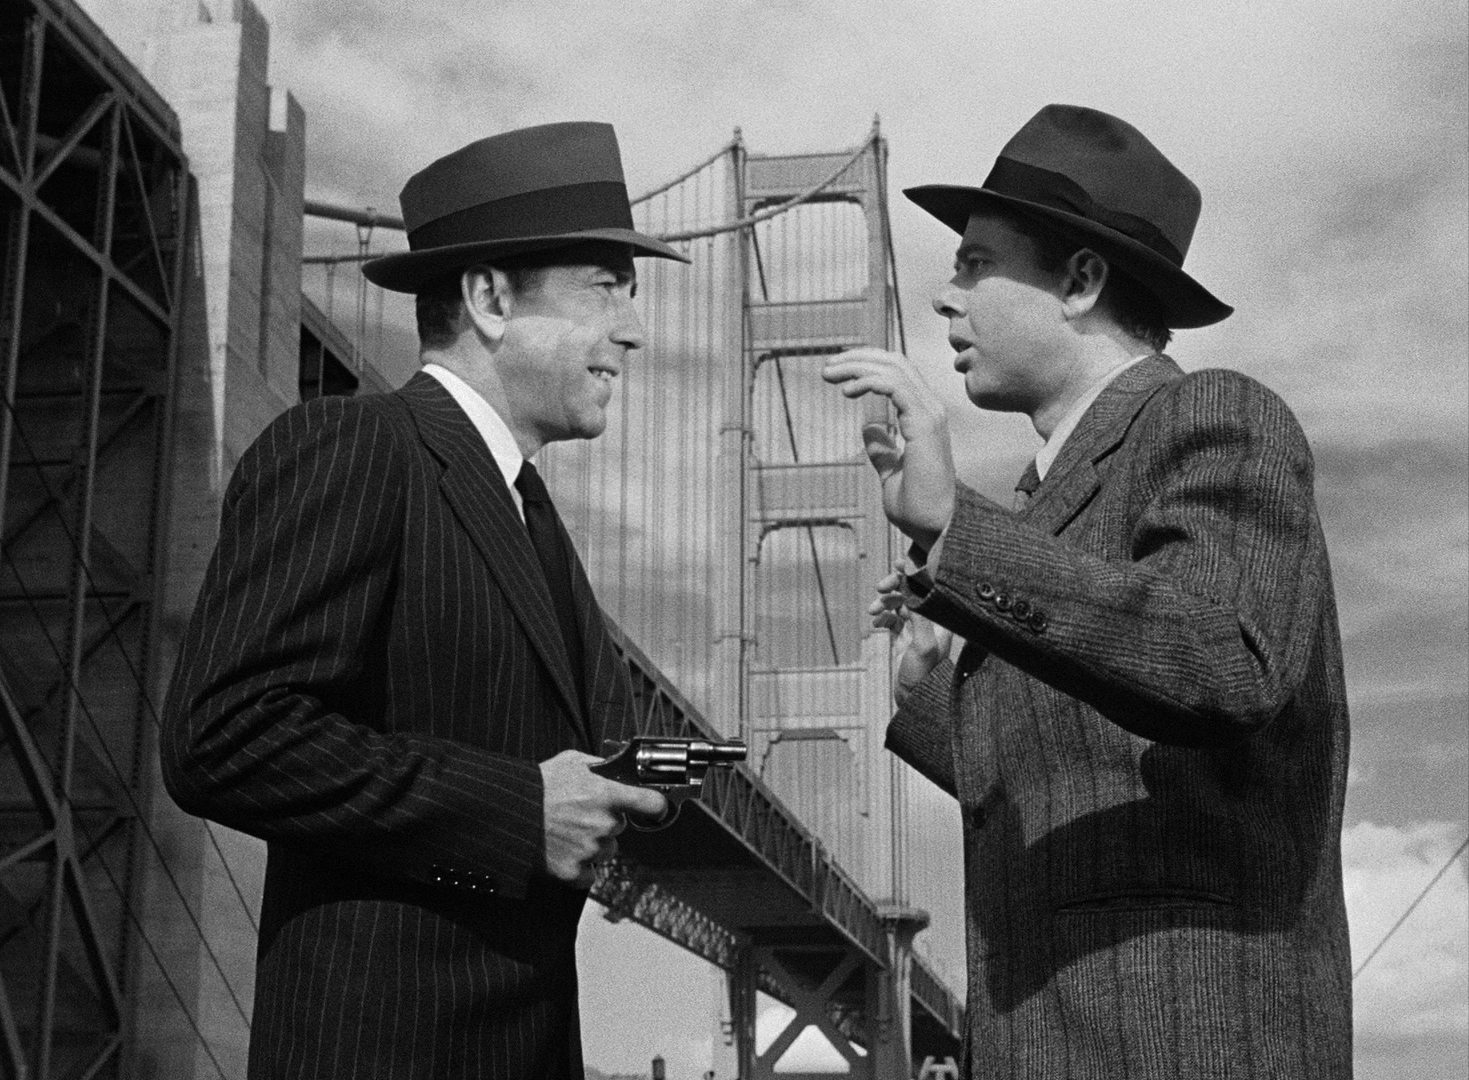 Schwarz-Weiß-Szene mit Humphrey Bogart als Vincent Parry, der vor dem Hintergrund der Golden Gate Bridge einen Mann, gespielt von Clifton Young, mit einem Revolver bedroht.